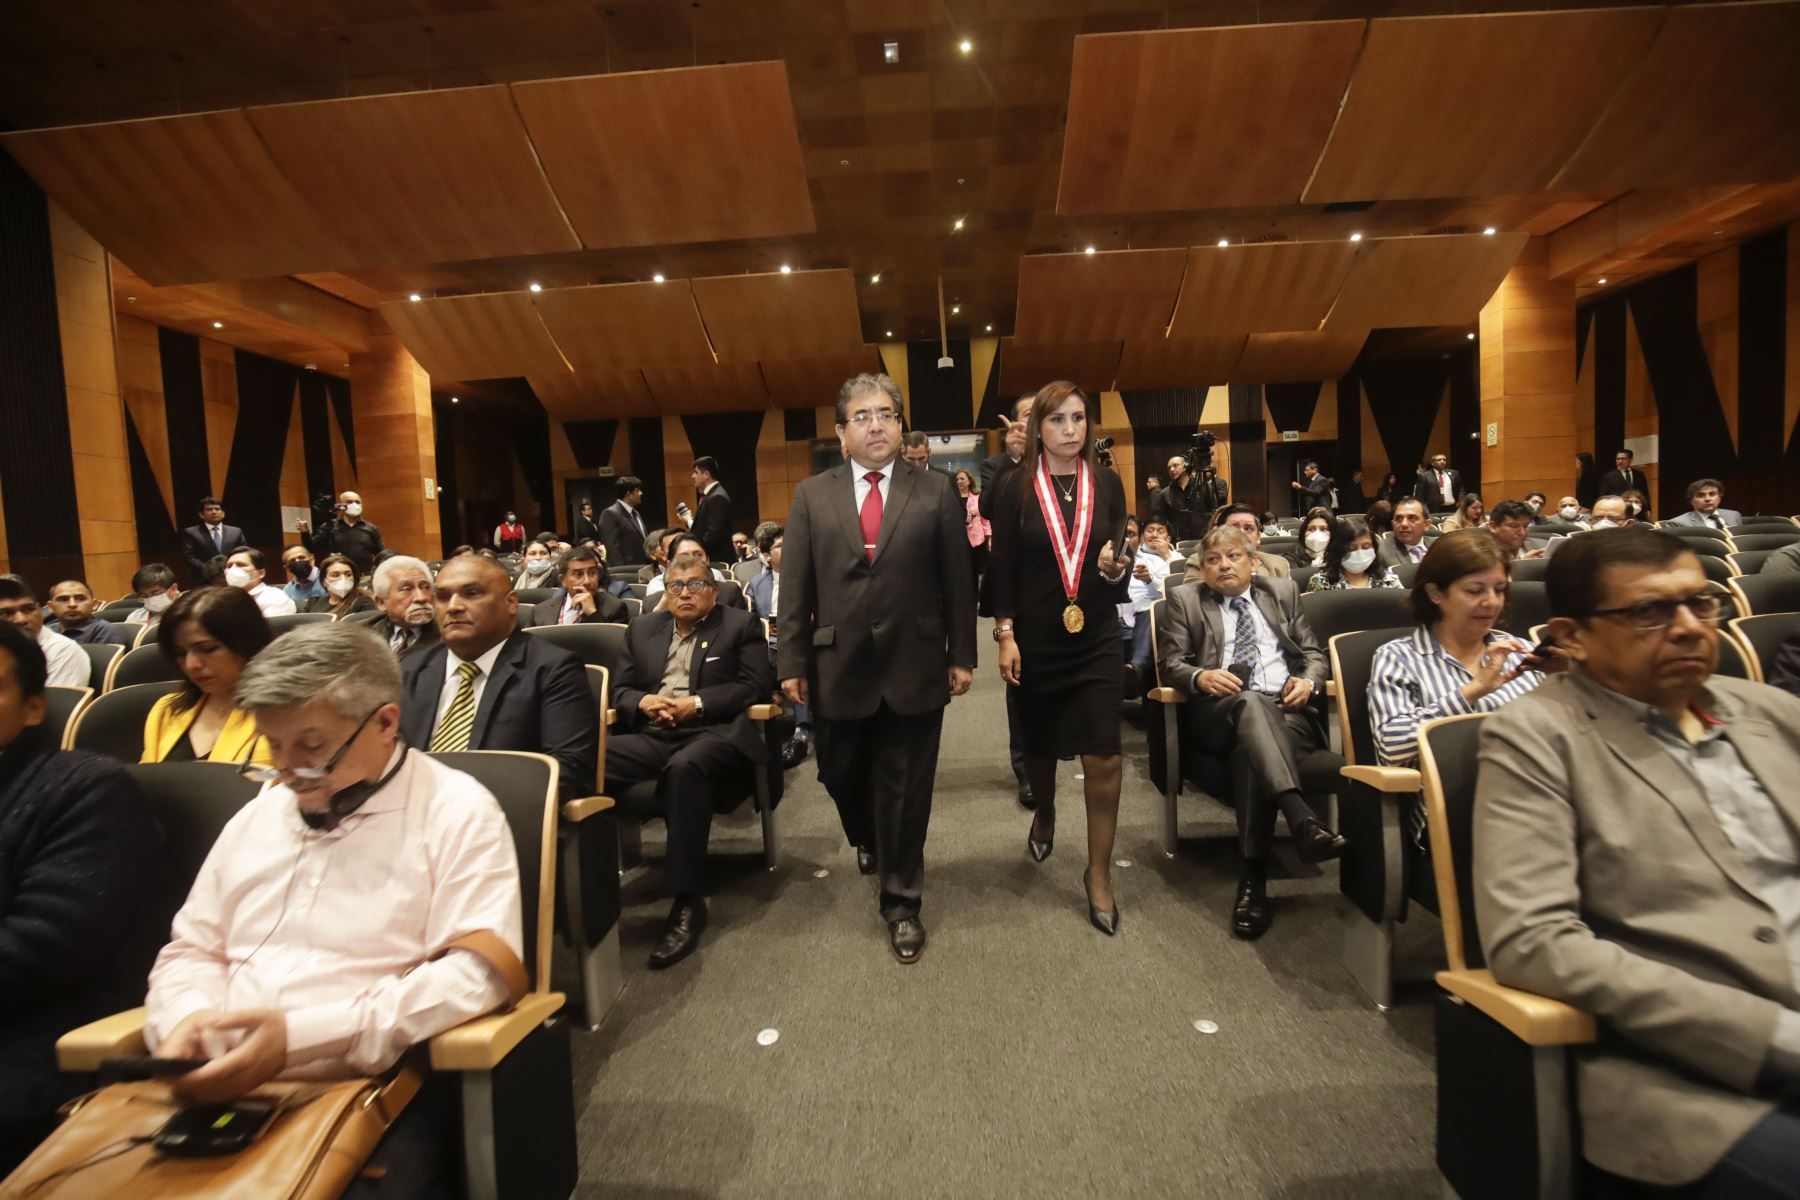 El Contralor General Nelson Shack presentó el Índice de Corrupción a nivel nacional en el marco del lanzamiento del Observatorio Nacional Anticorrupción  Foto: ANDINA/Juan Carlos Guzmán Negrini.